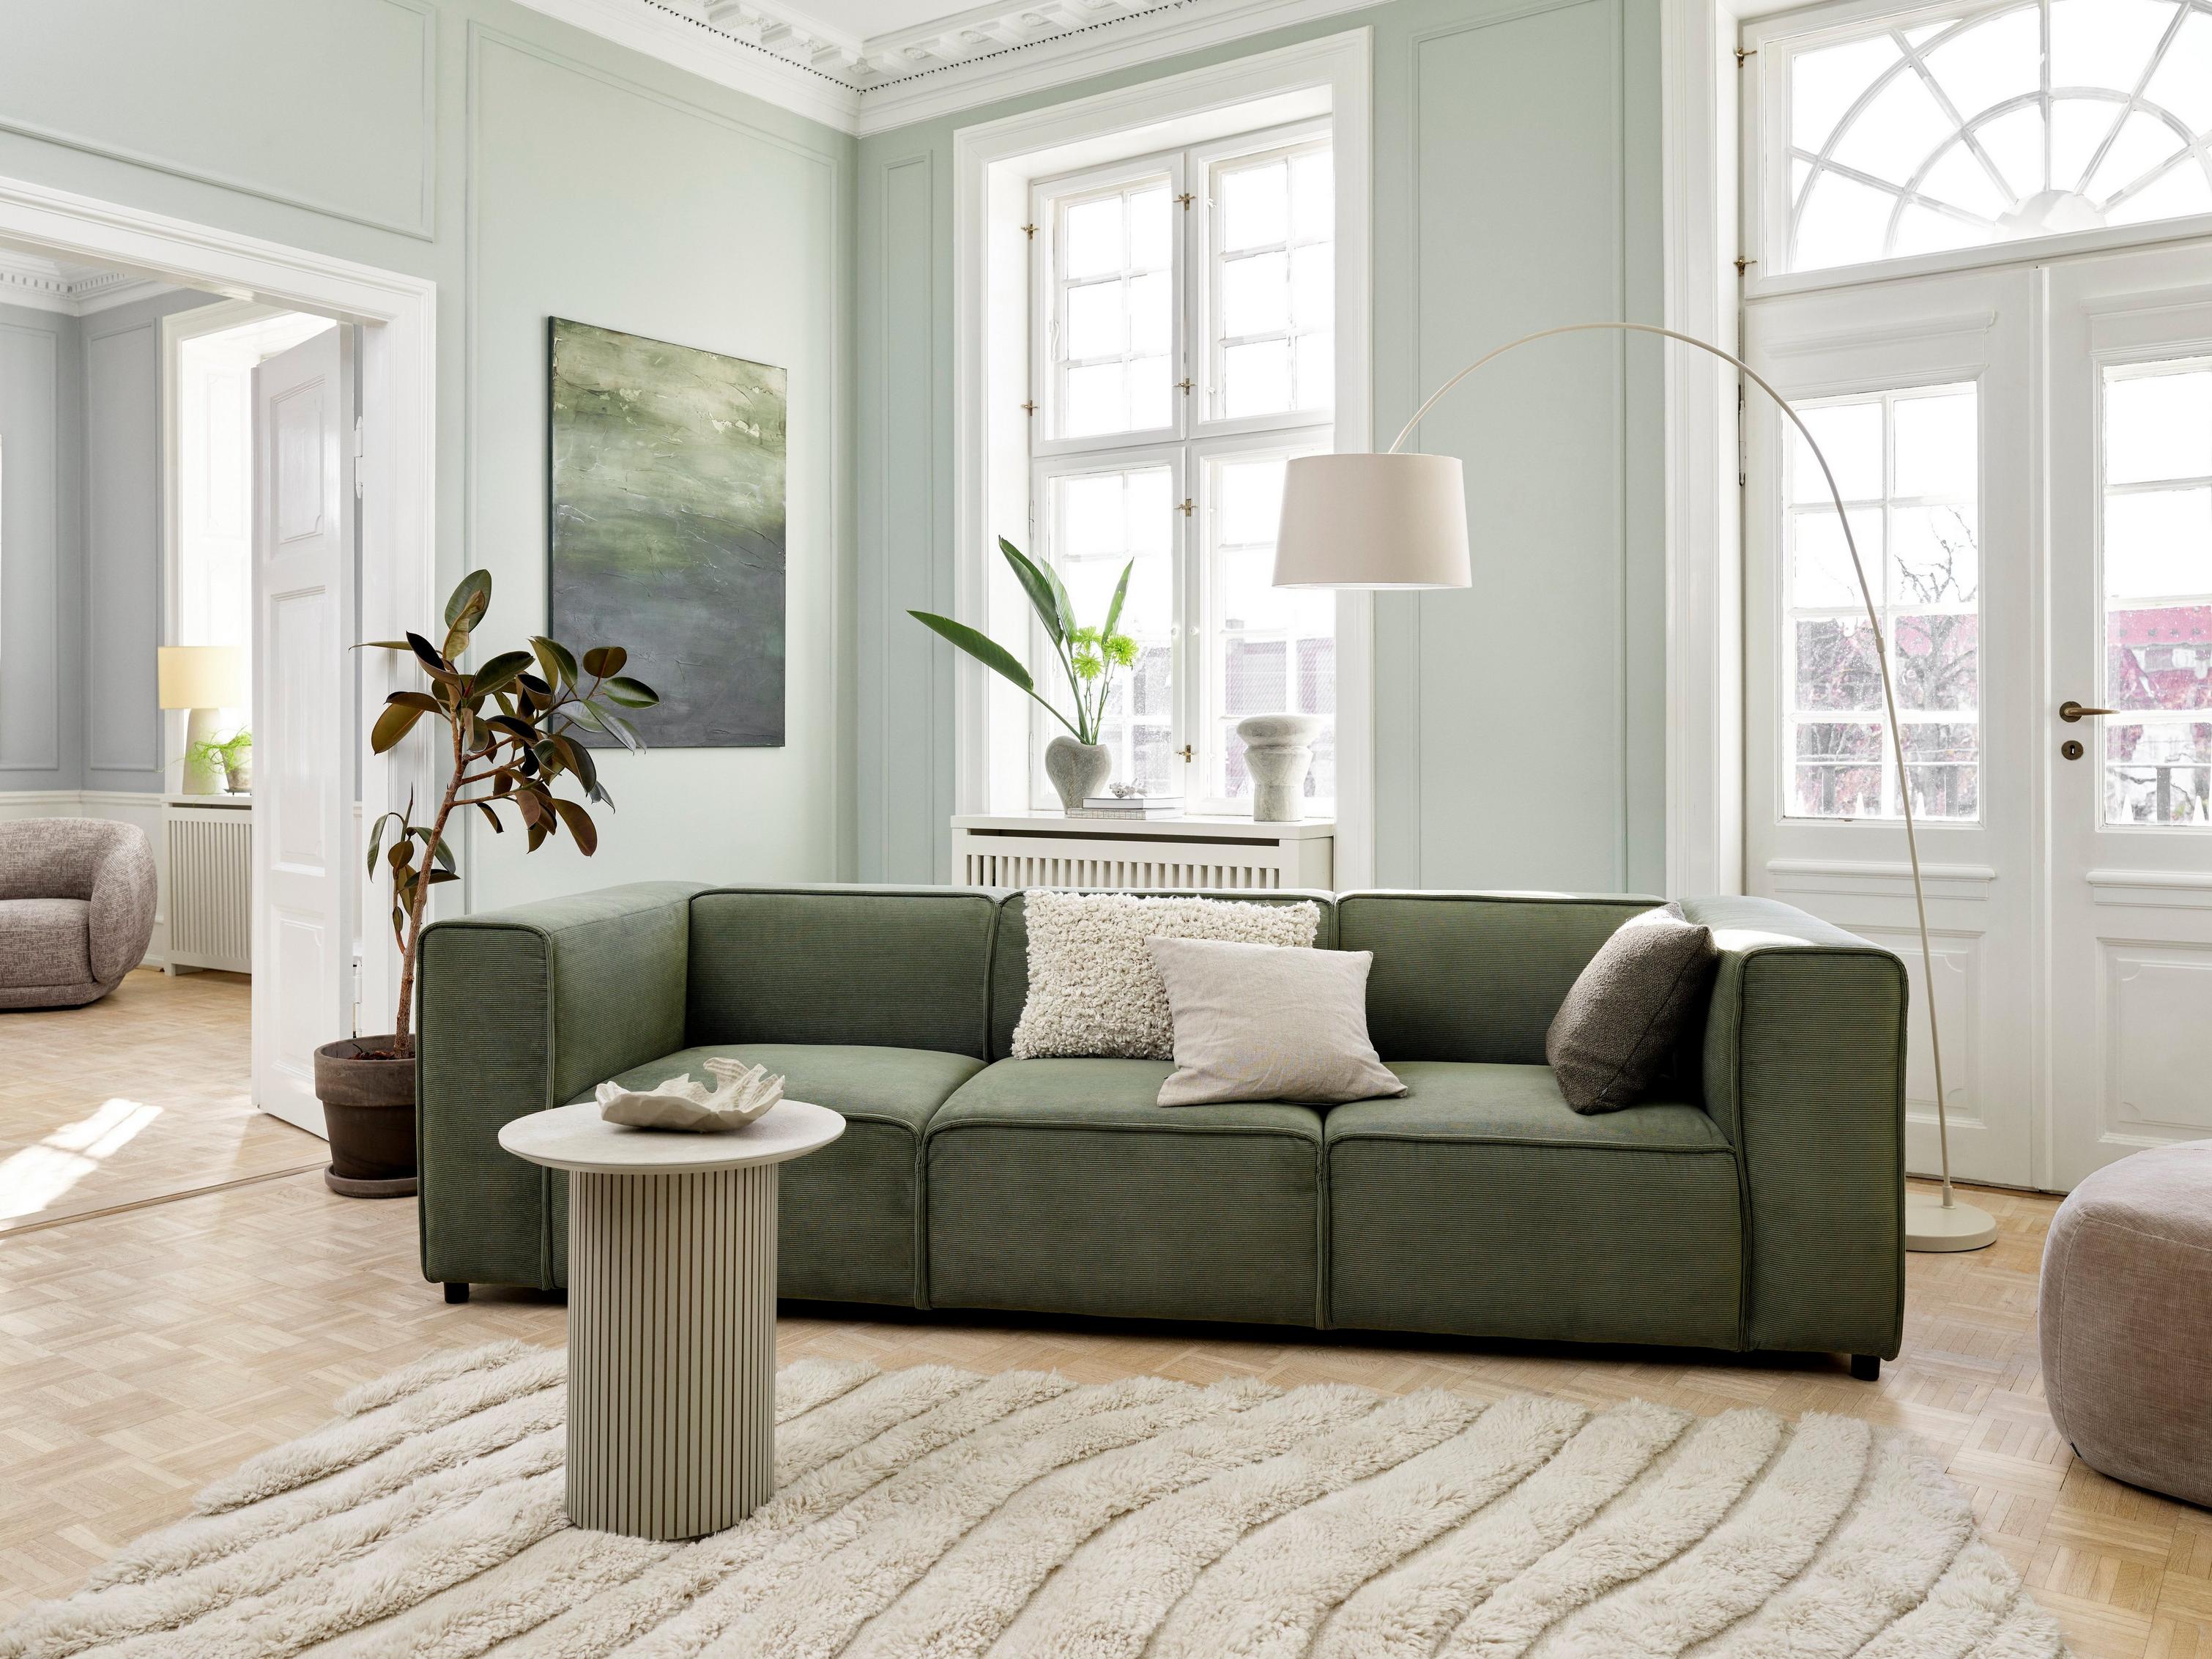 Гостиная в стиле «джапанди» с диваном Carmo с обивкой из ткани Skagen зеленого цвета.